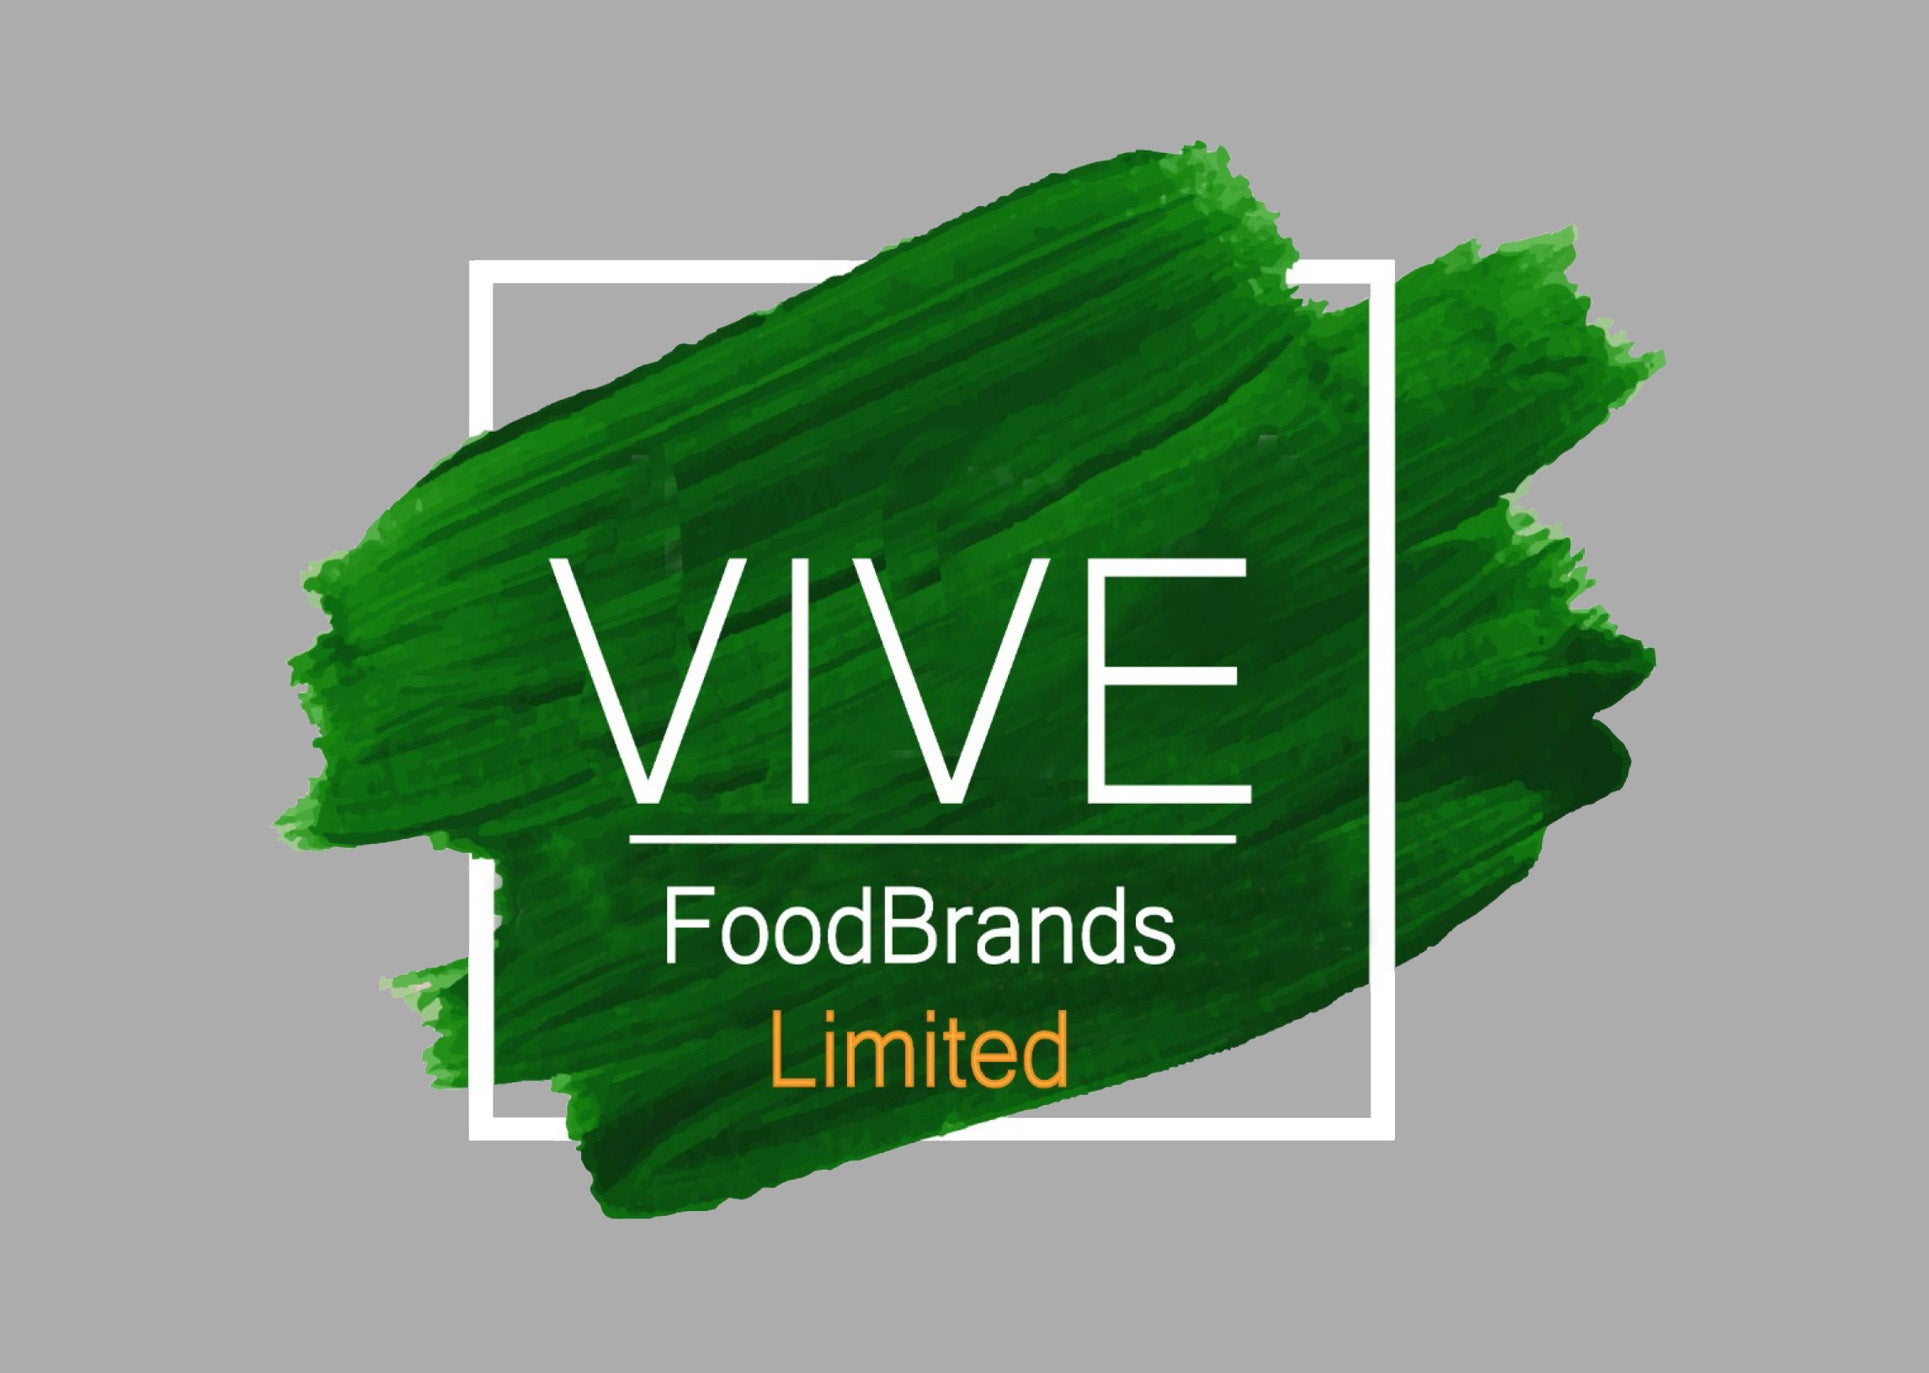 Vive Foods